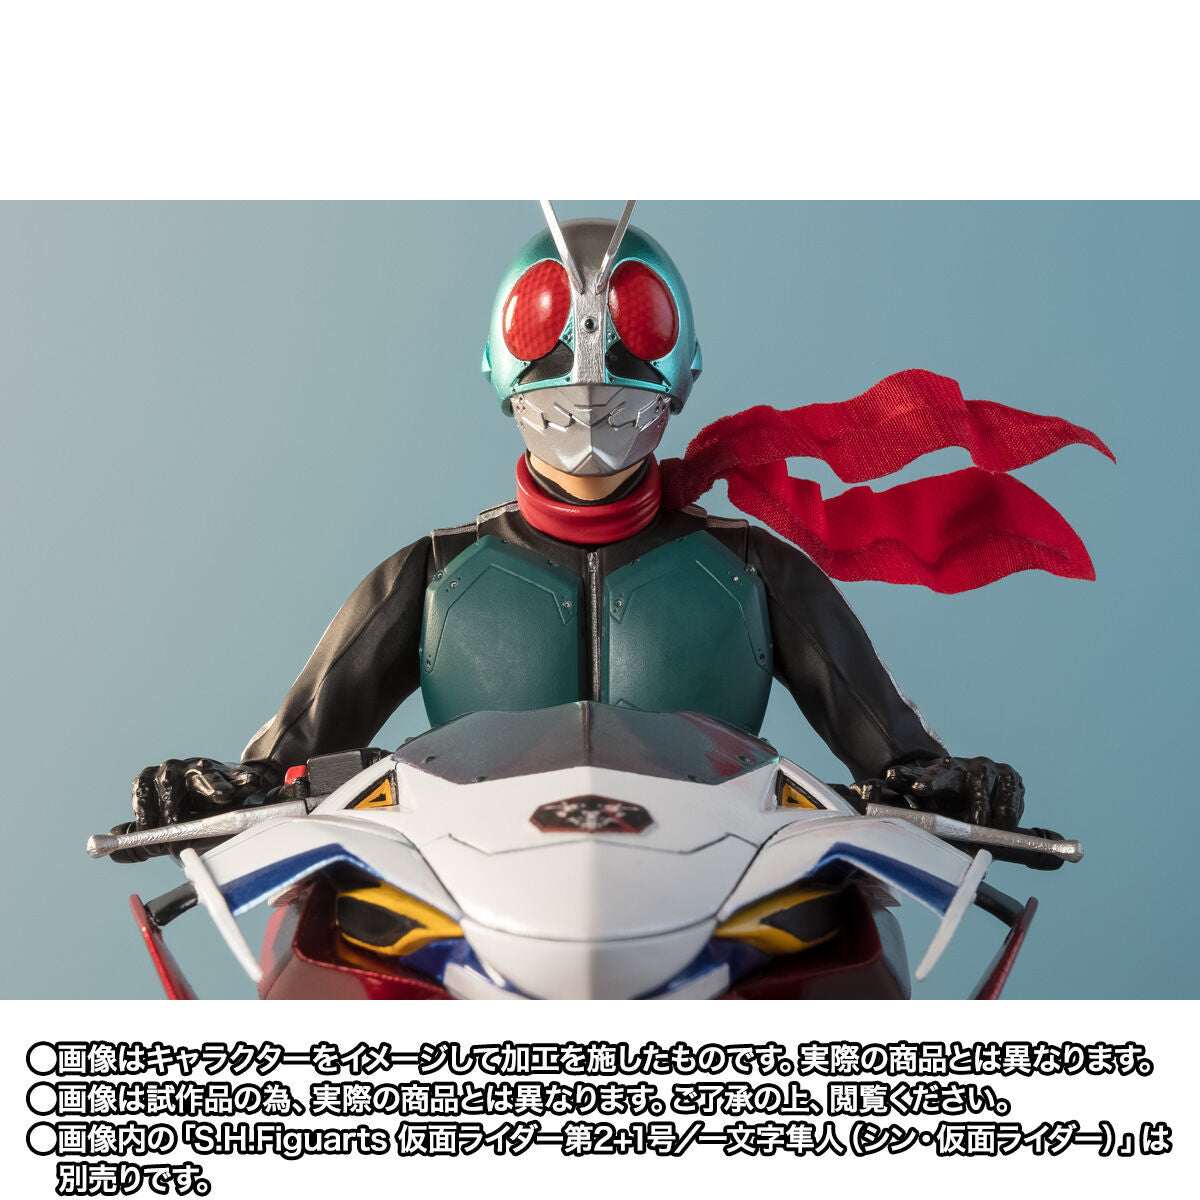 SH Figuarts Shin Cyclone - Shin Kamen Rider